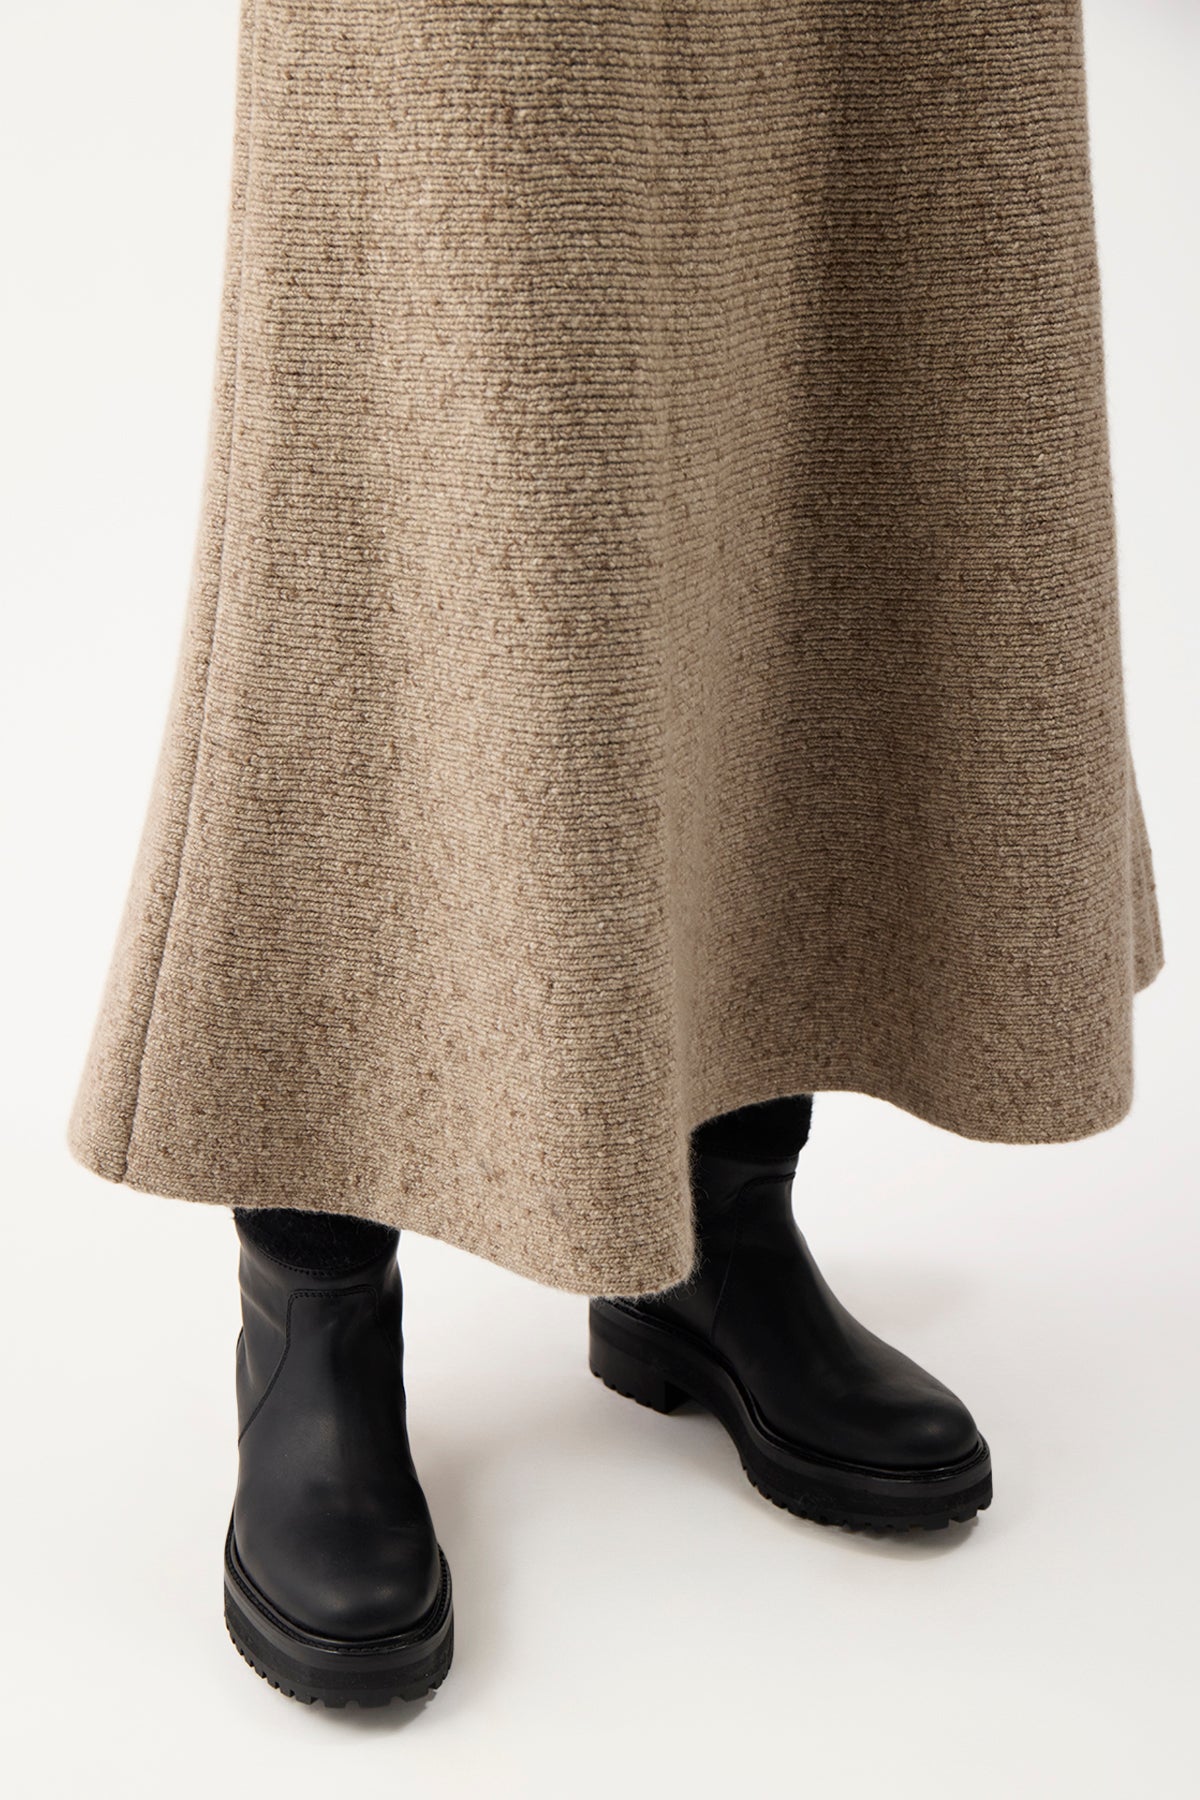 Eden Skirt in Aran Cashmere – Gabriela Hearst